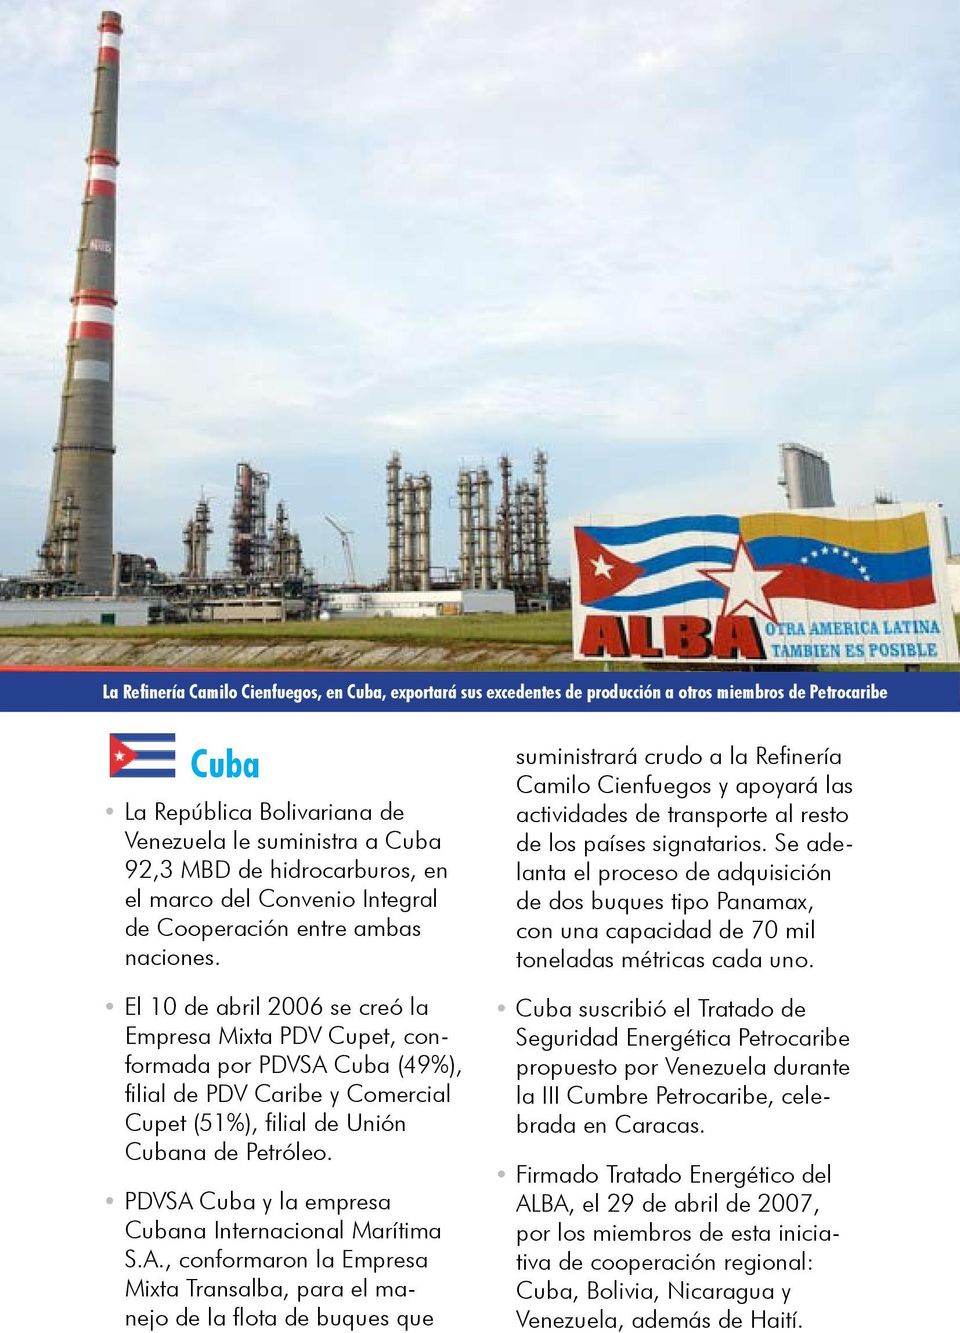 El 10 de abril 2006 se creó la Empresa Mixta PDV Cupet, conformada por PDVSA Cuba (49%), filial de PDV Caribe y Comercial Cupet (51%), filial de Unión Cubana de Petróleo.